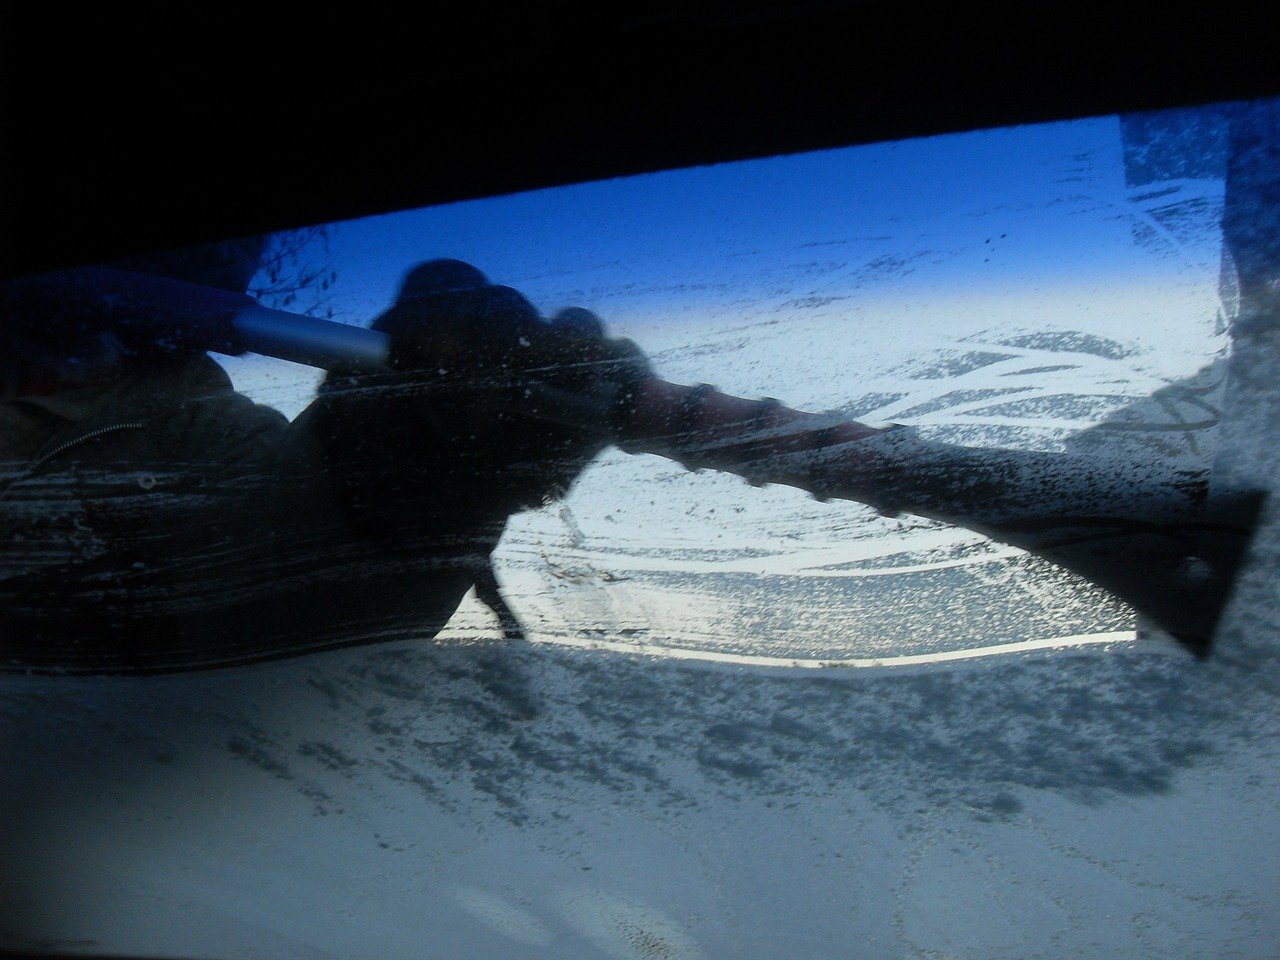 Nemáte chuť škrabať auto? Ktoré triky na zamrznuté okno fungujú najlepšie?